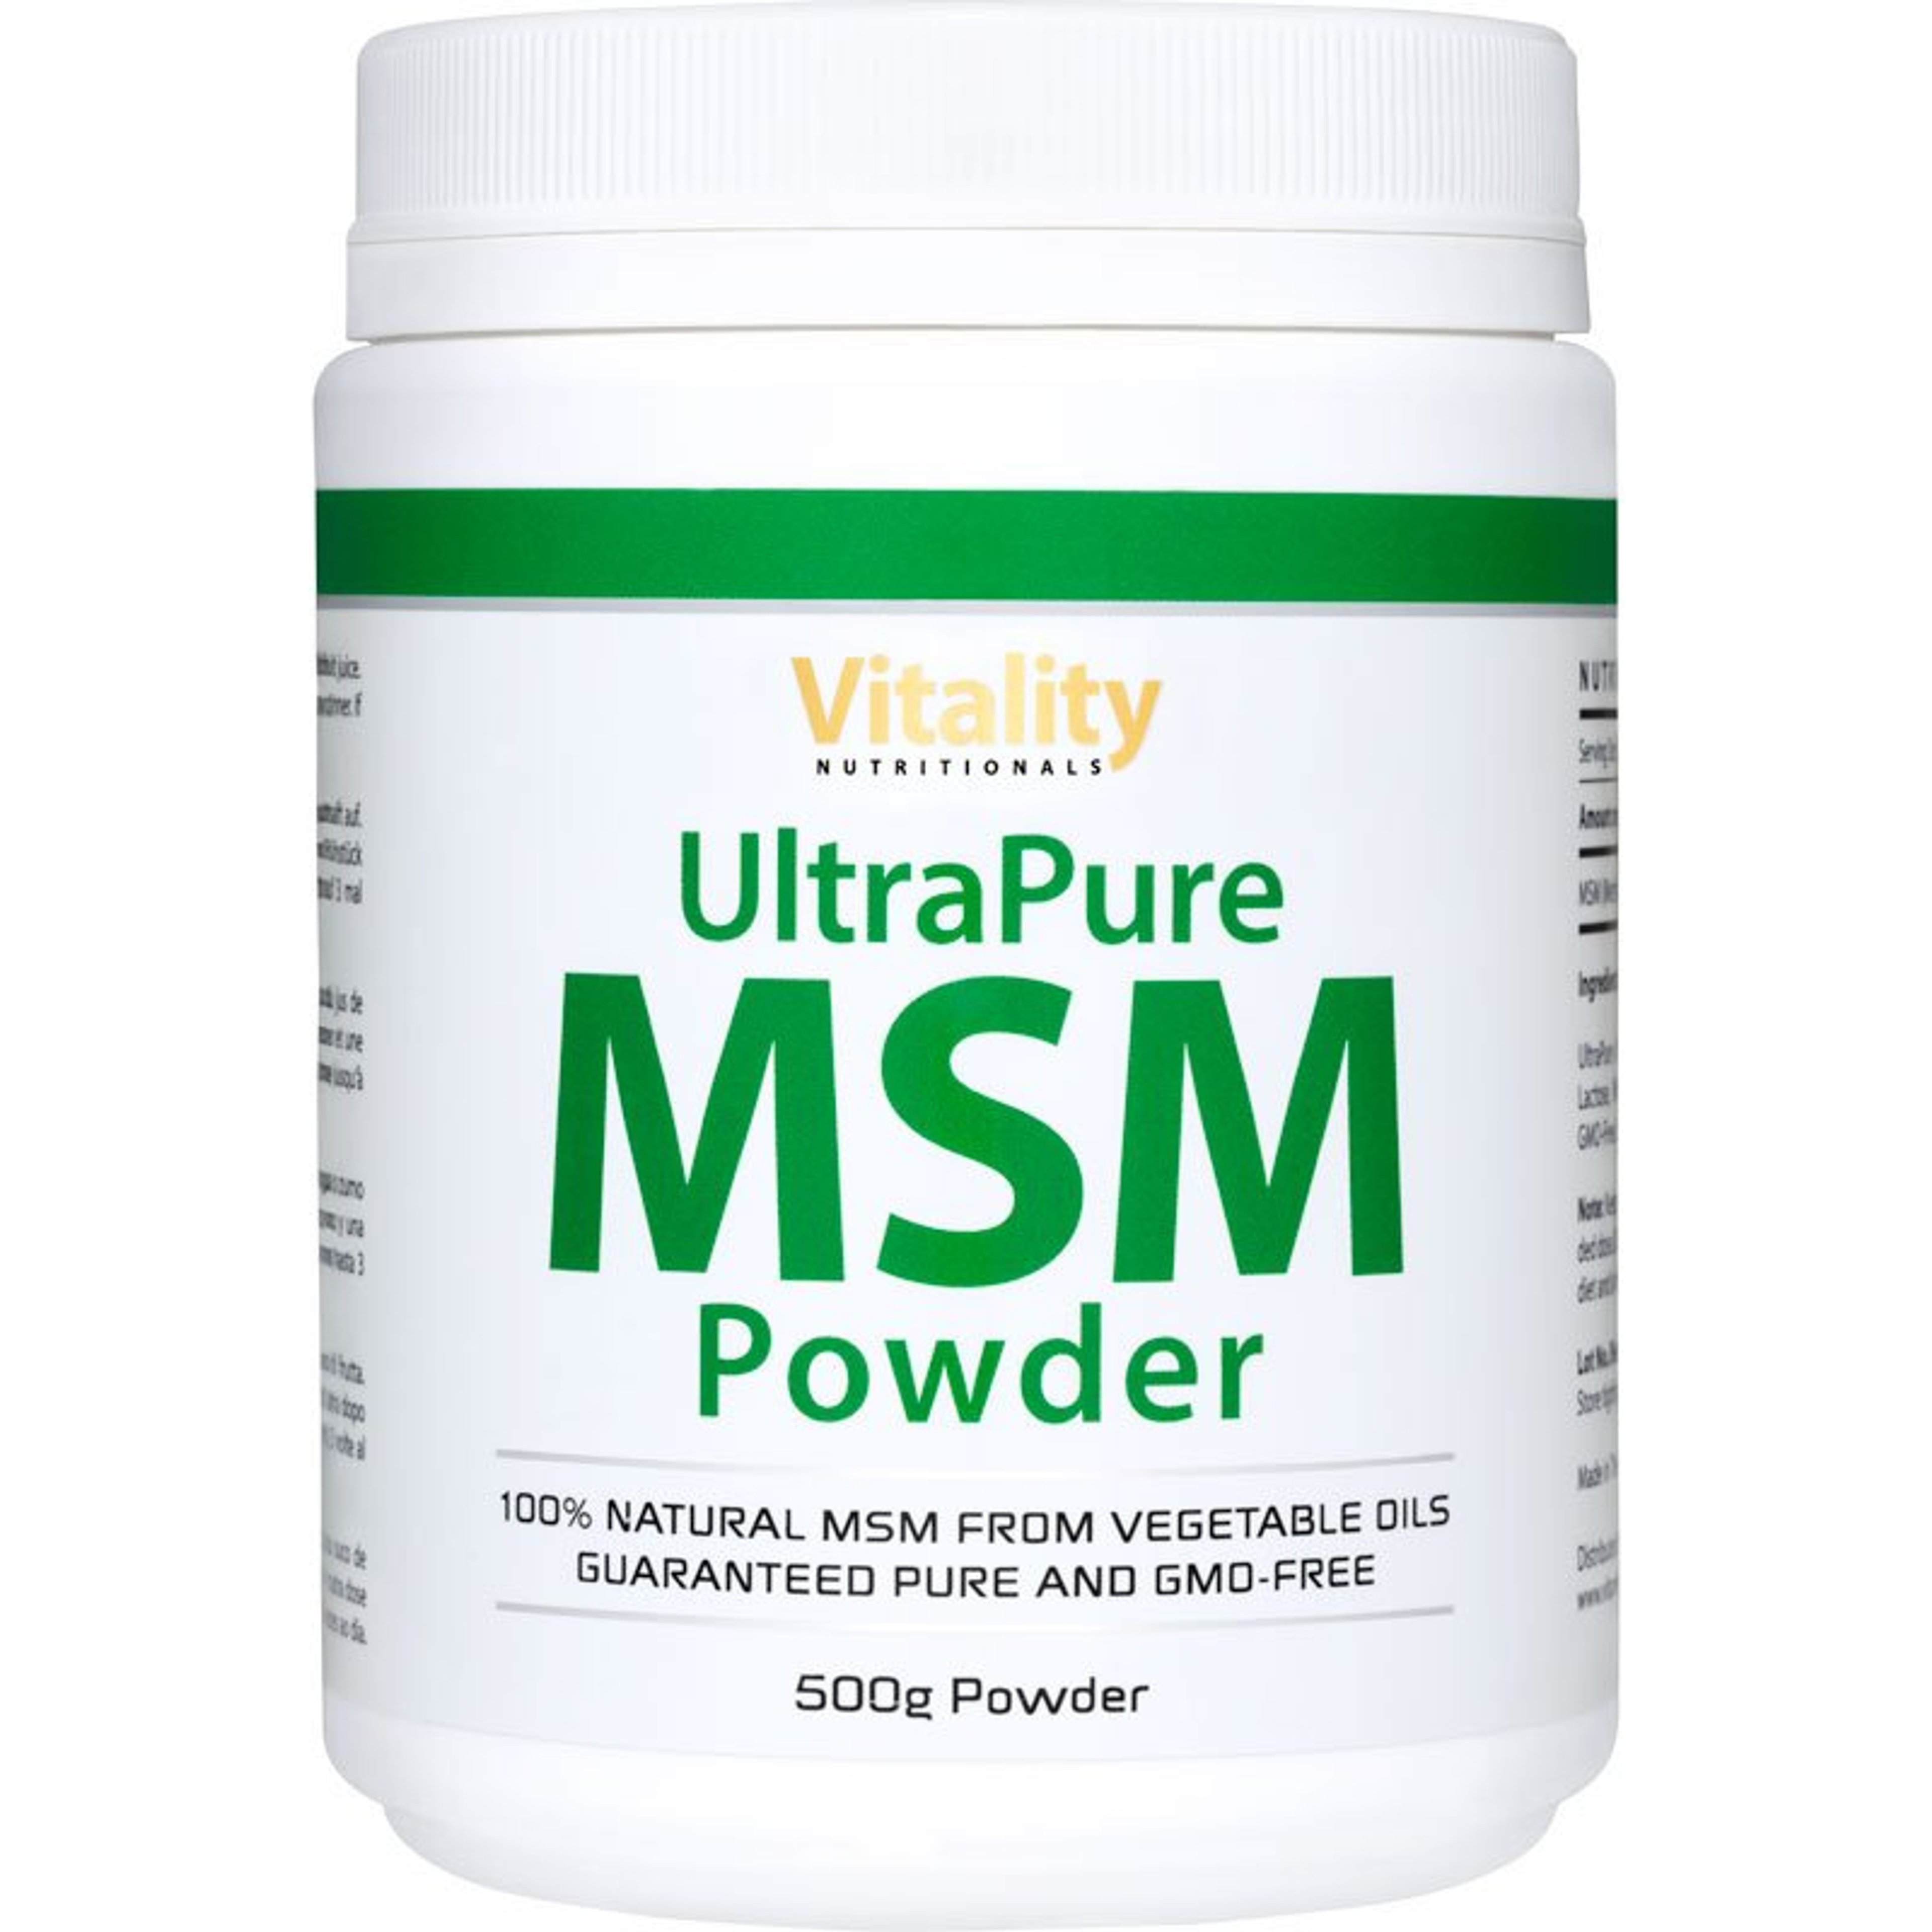 UltraPure MSM Powder - 500 g Powder